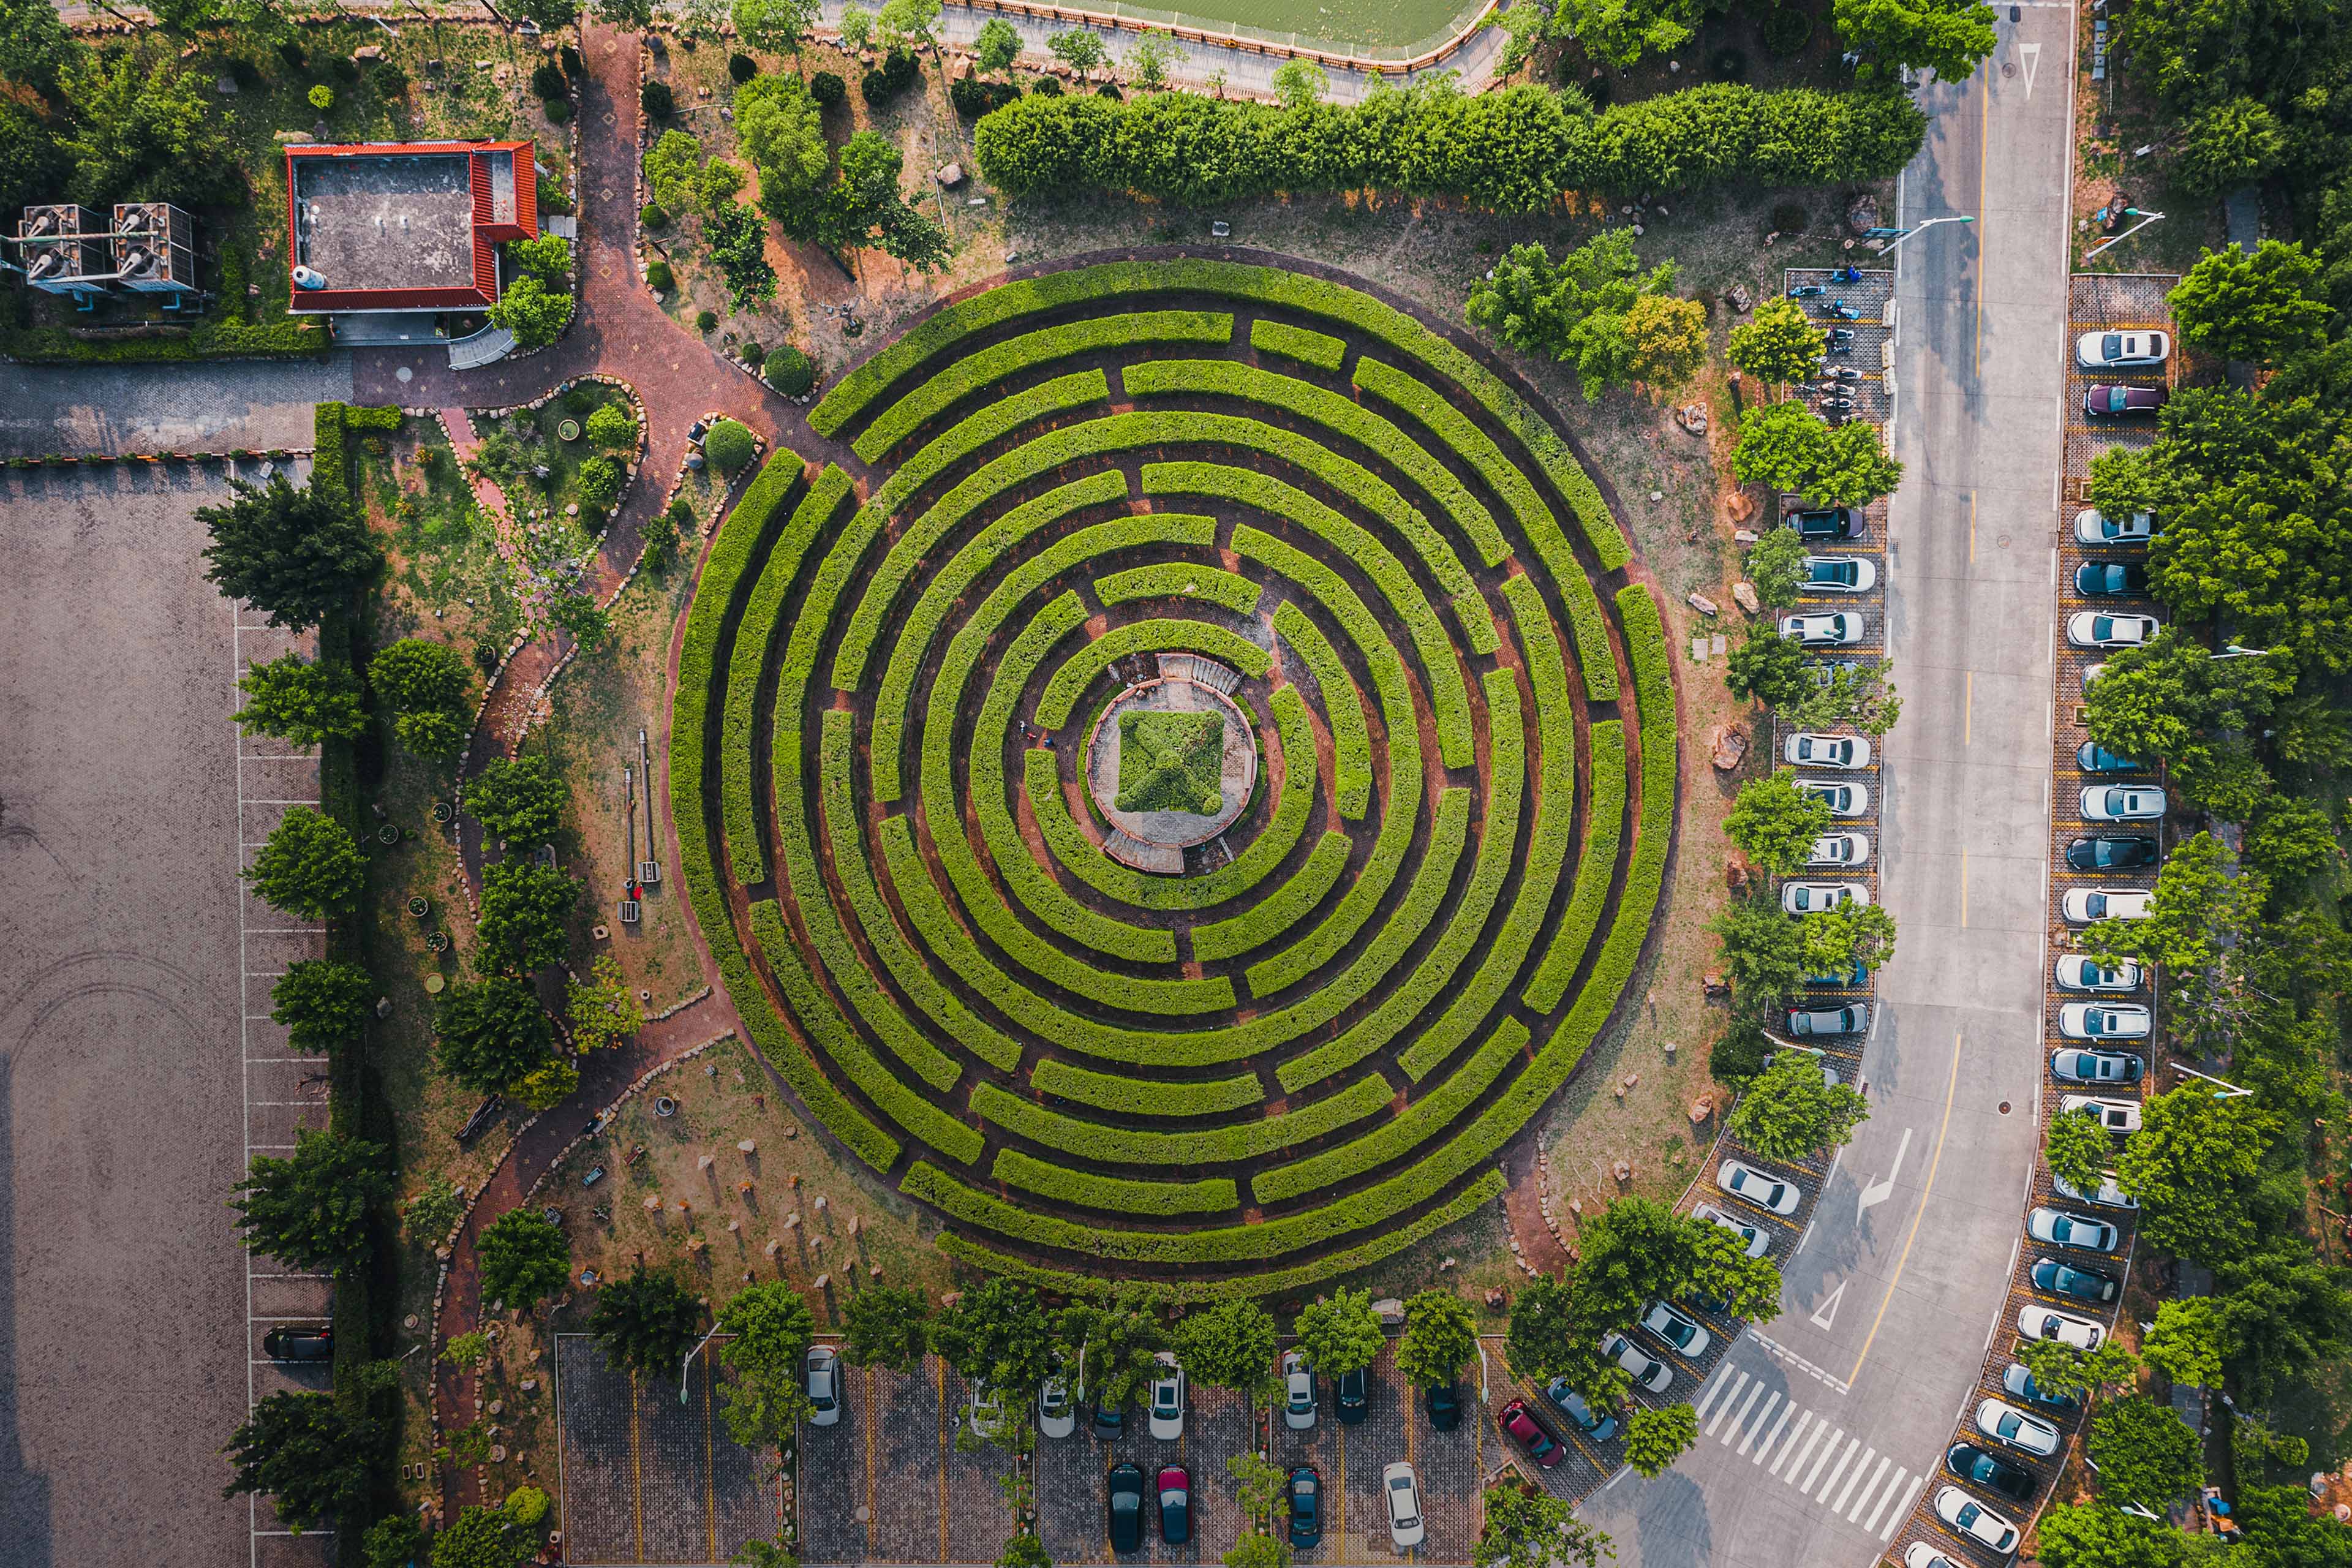 Aerial view of a circular garden maze